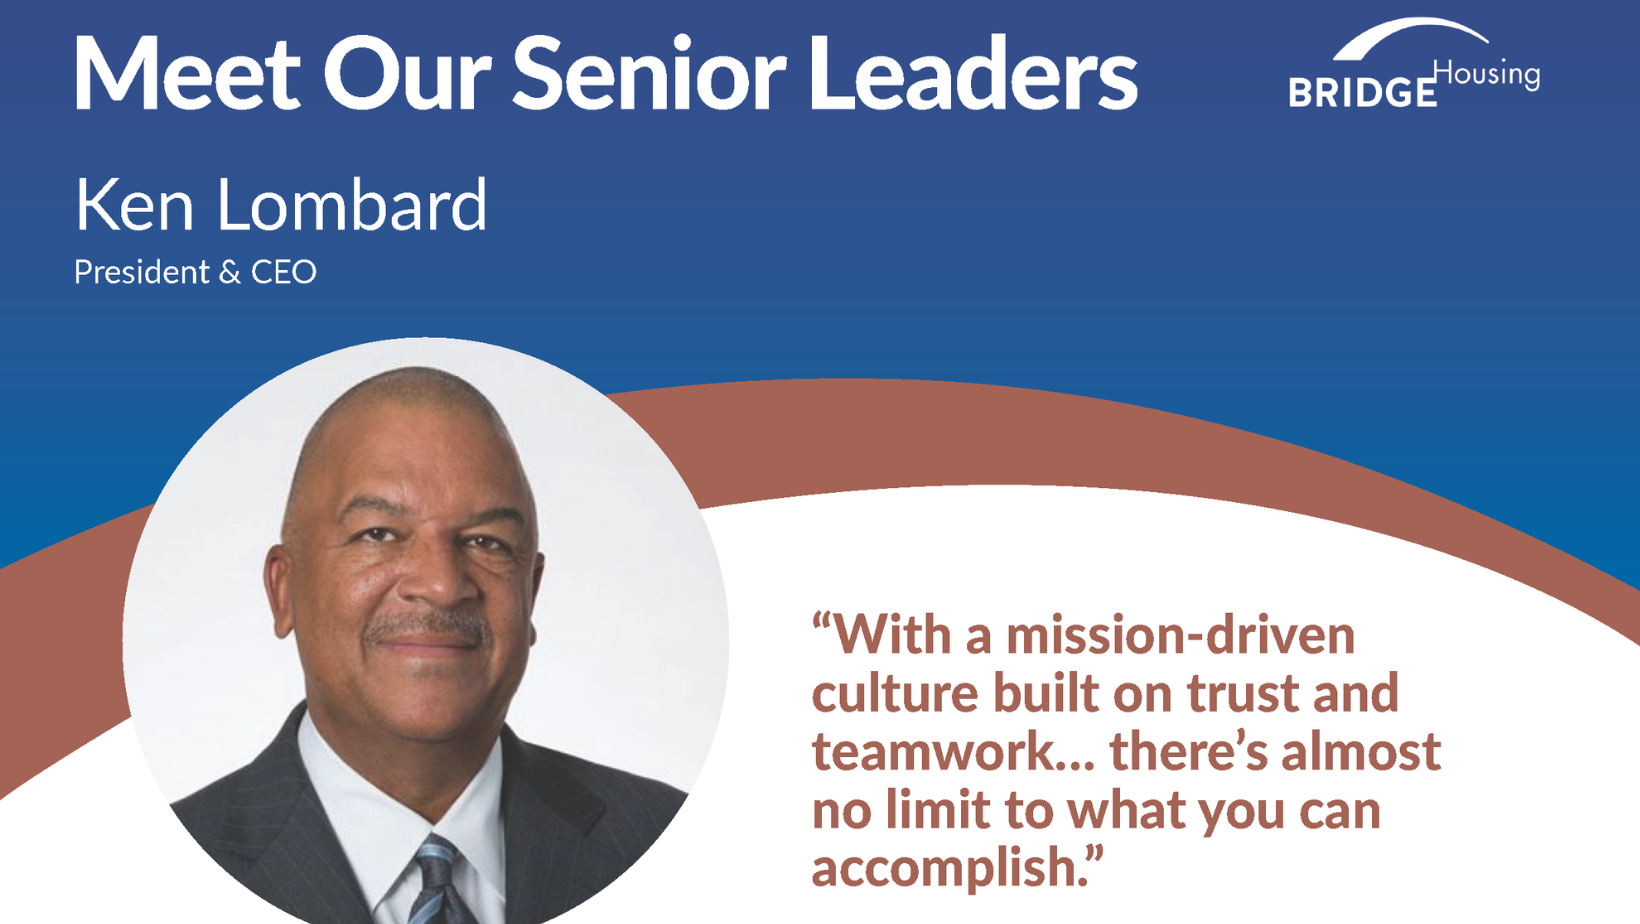 Meet Our Senior Leaders: Ken Lombard